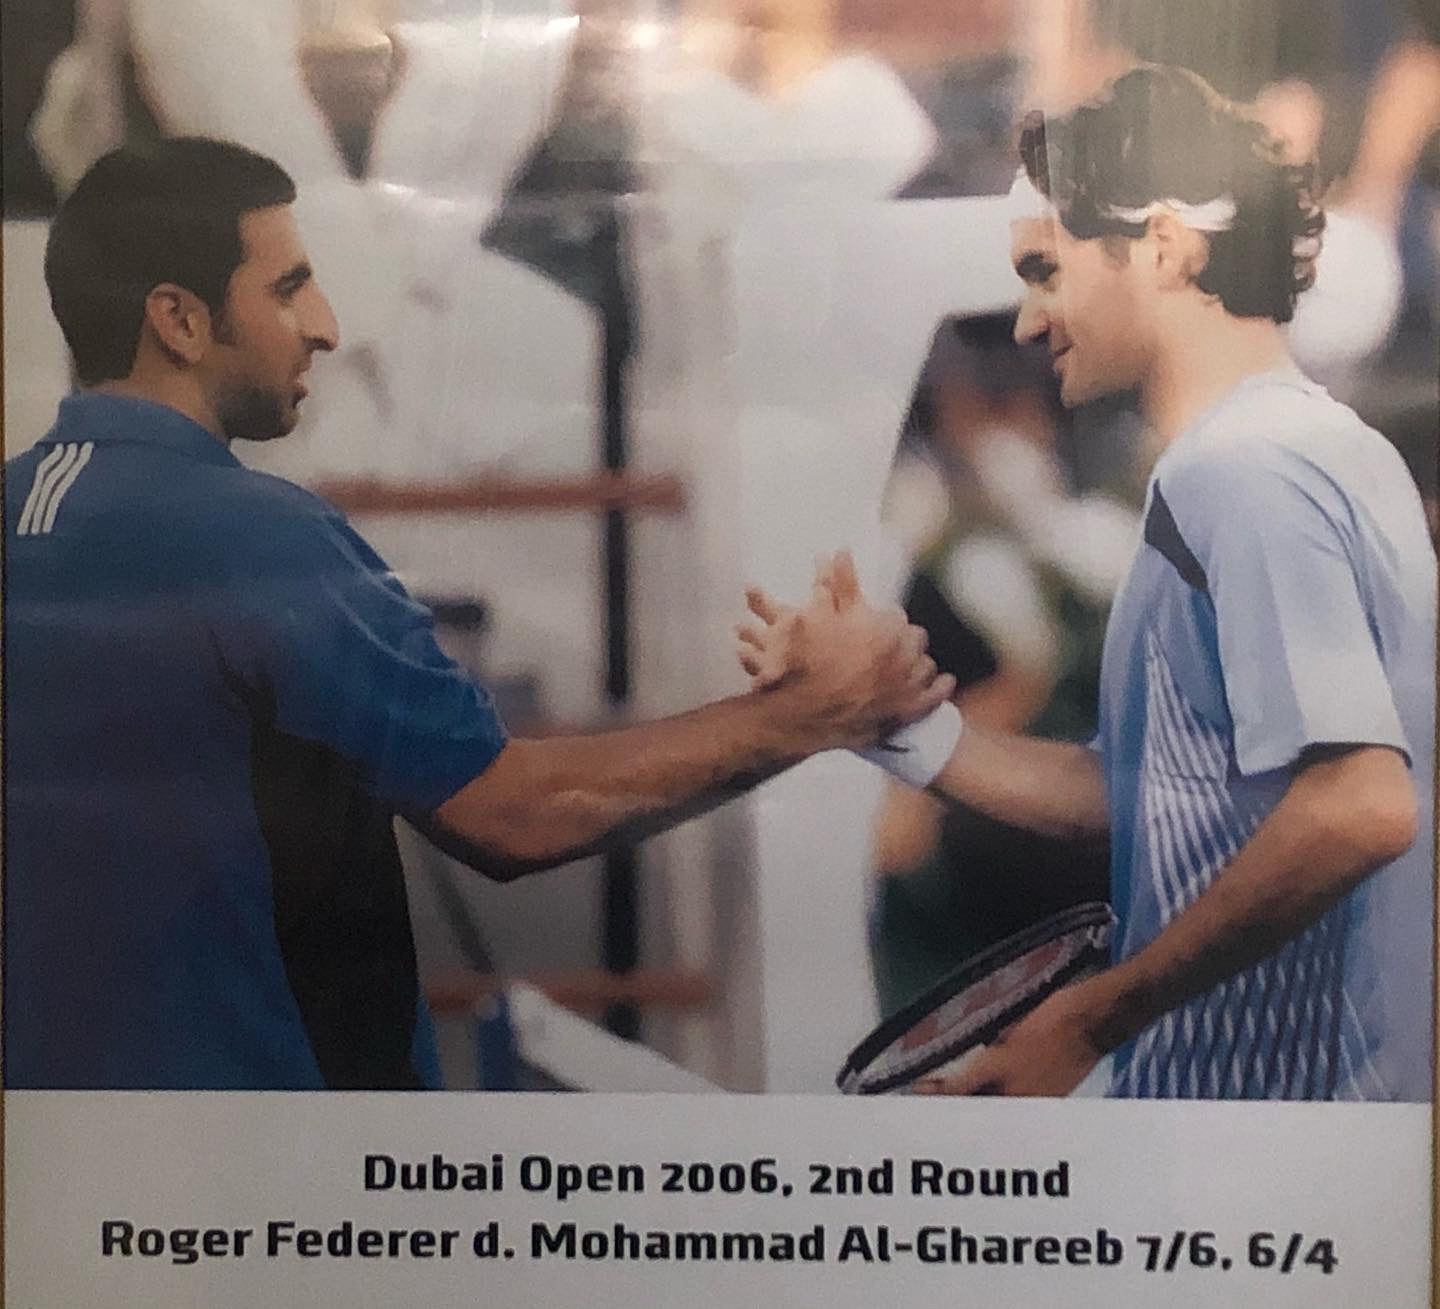 Mohammed Al-Ghareeb and Roger Federer